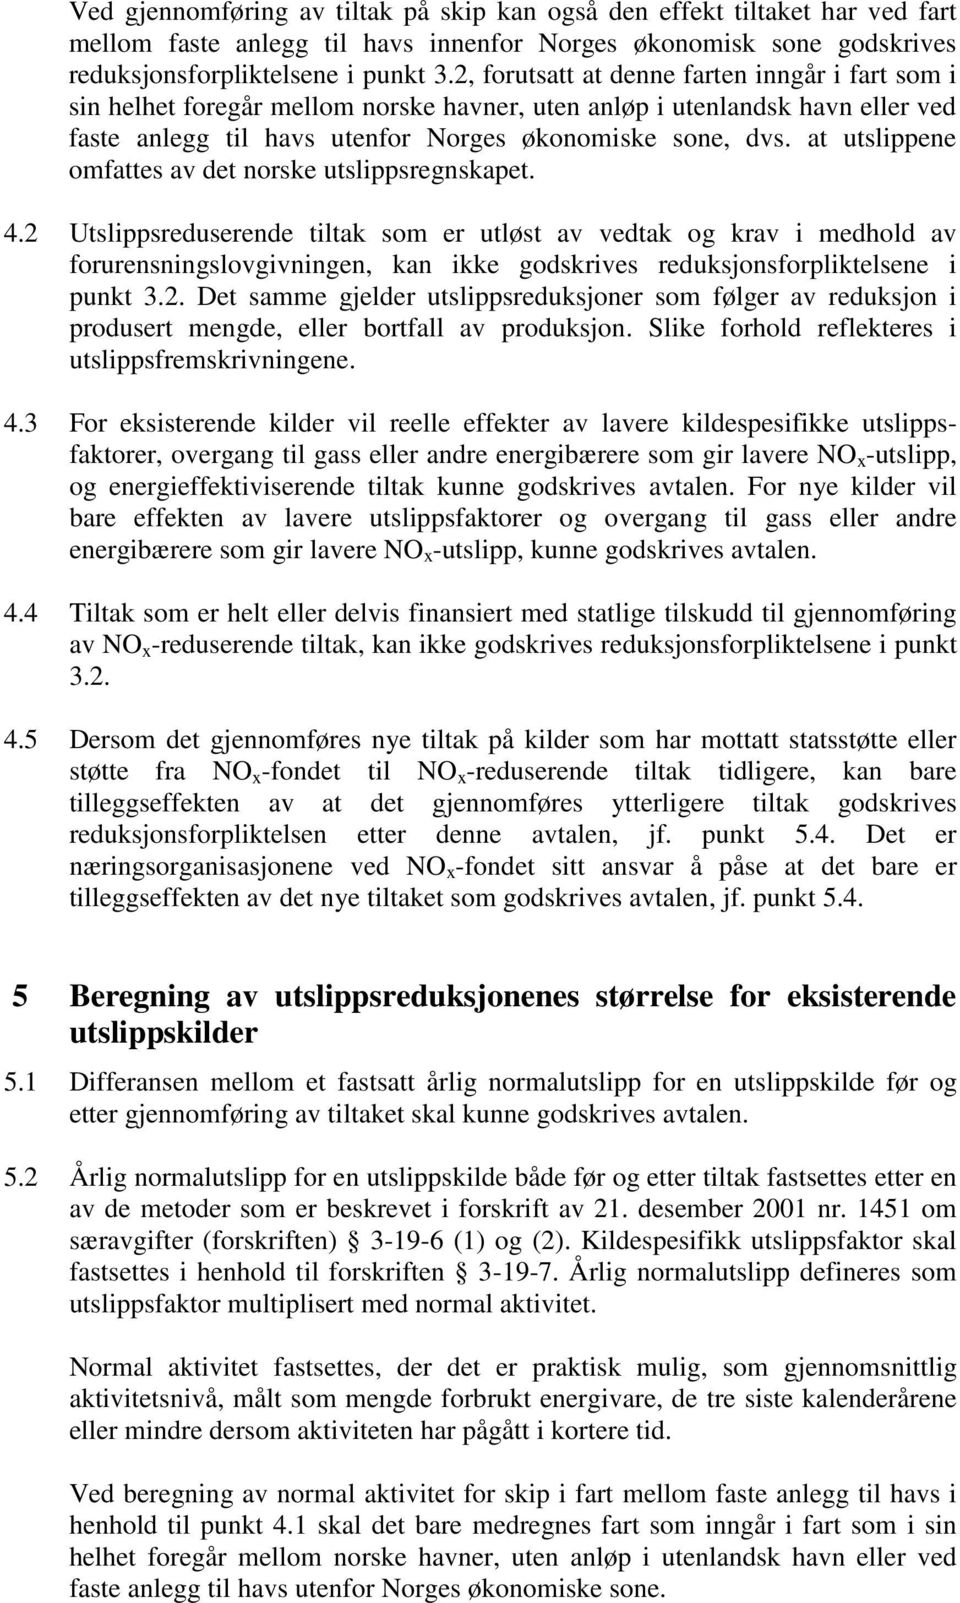 at utslippene omfattes av det norske utslippsregnskapet. 4.